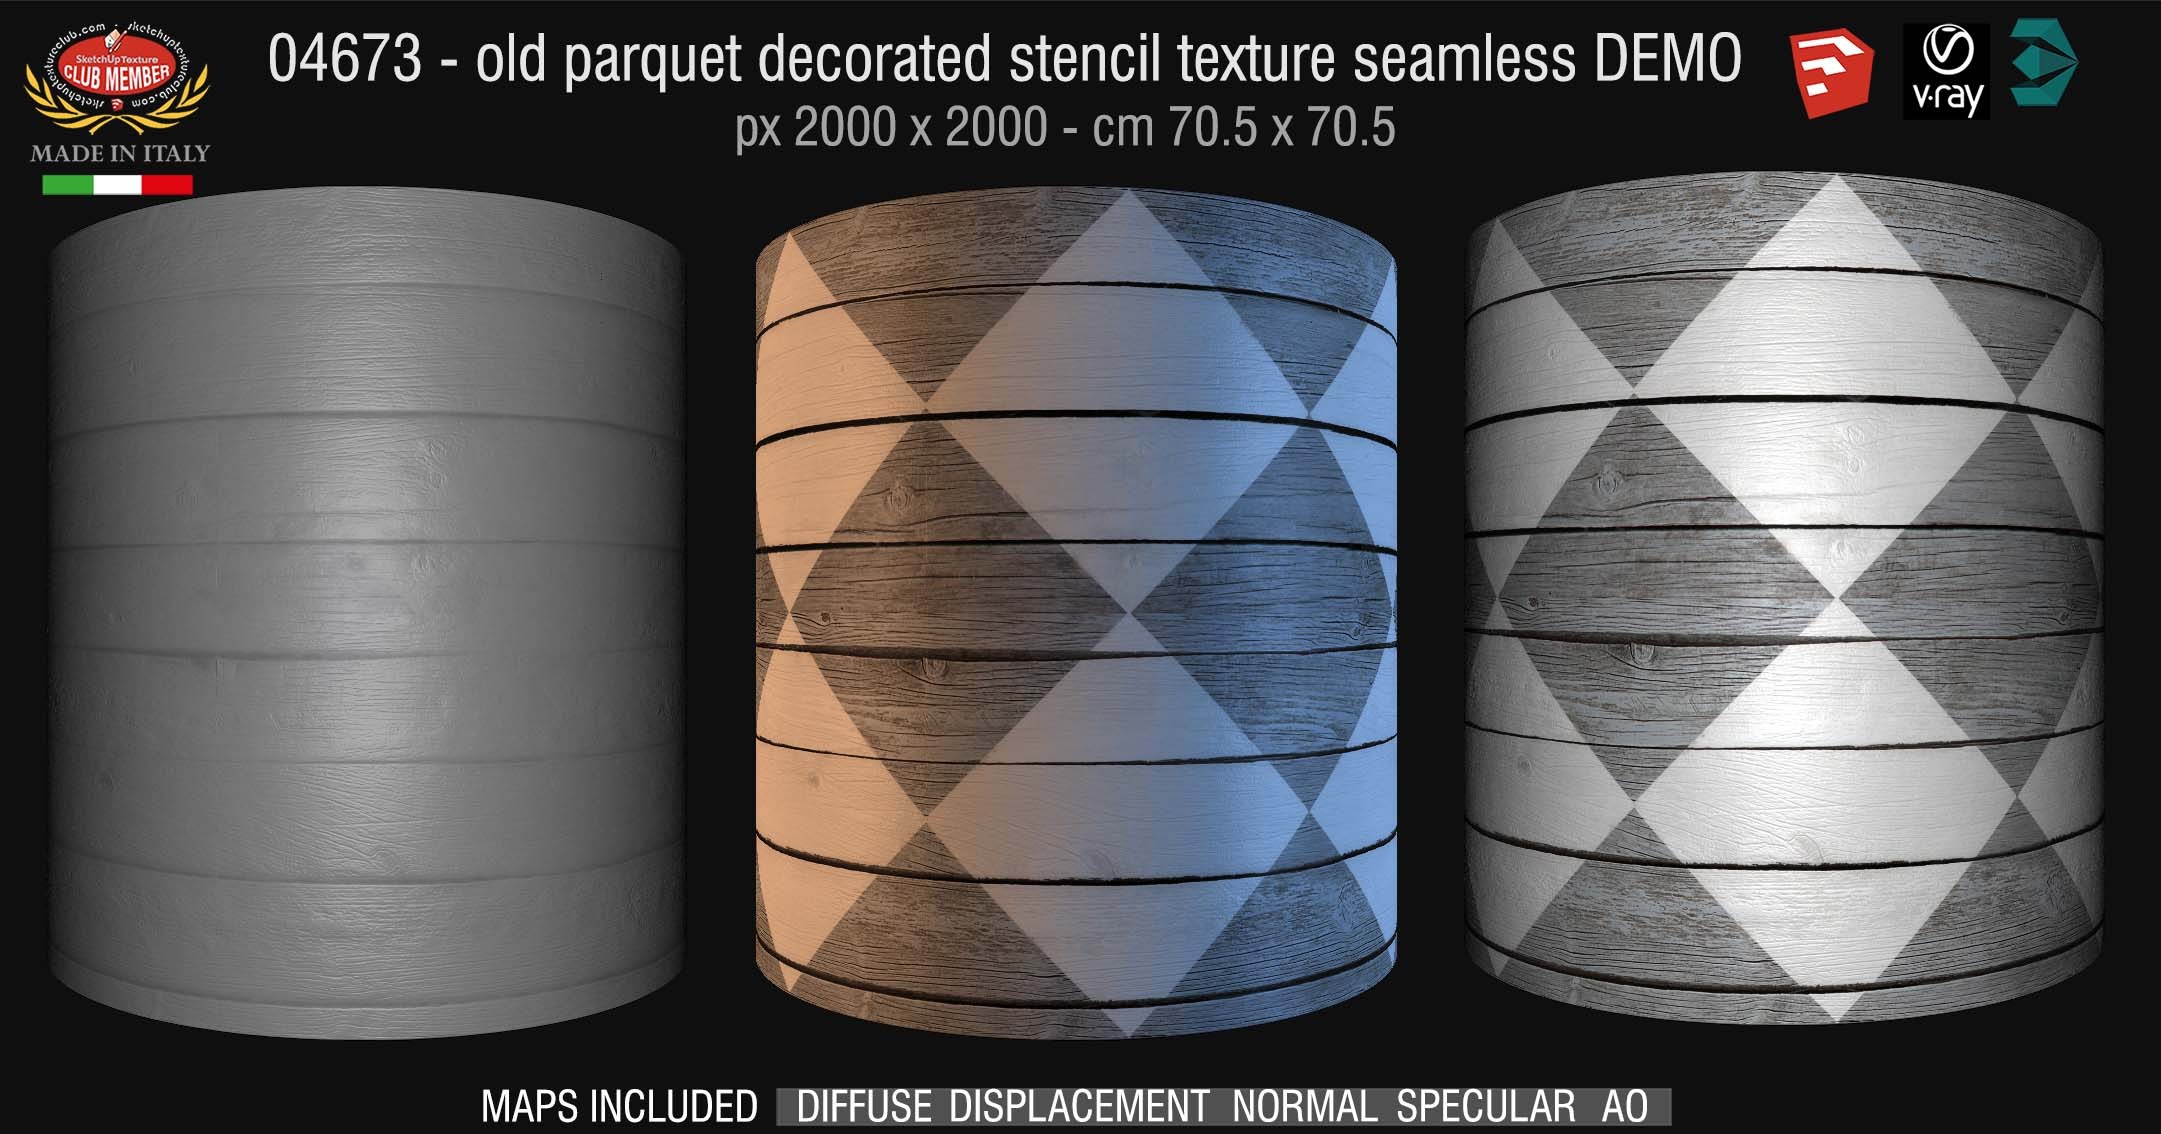 04673 HR Parquet decorated stencil texture seamless + maps DEMO